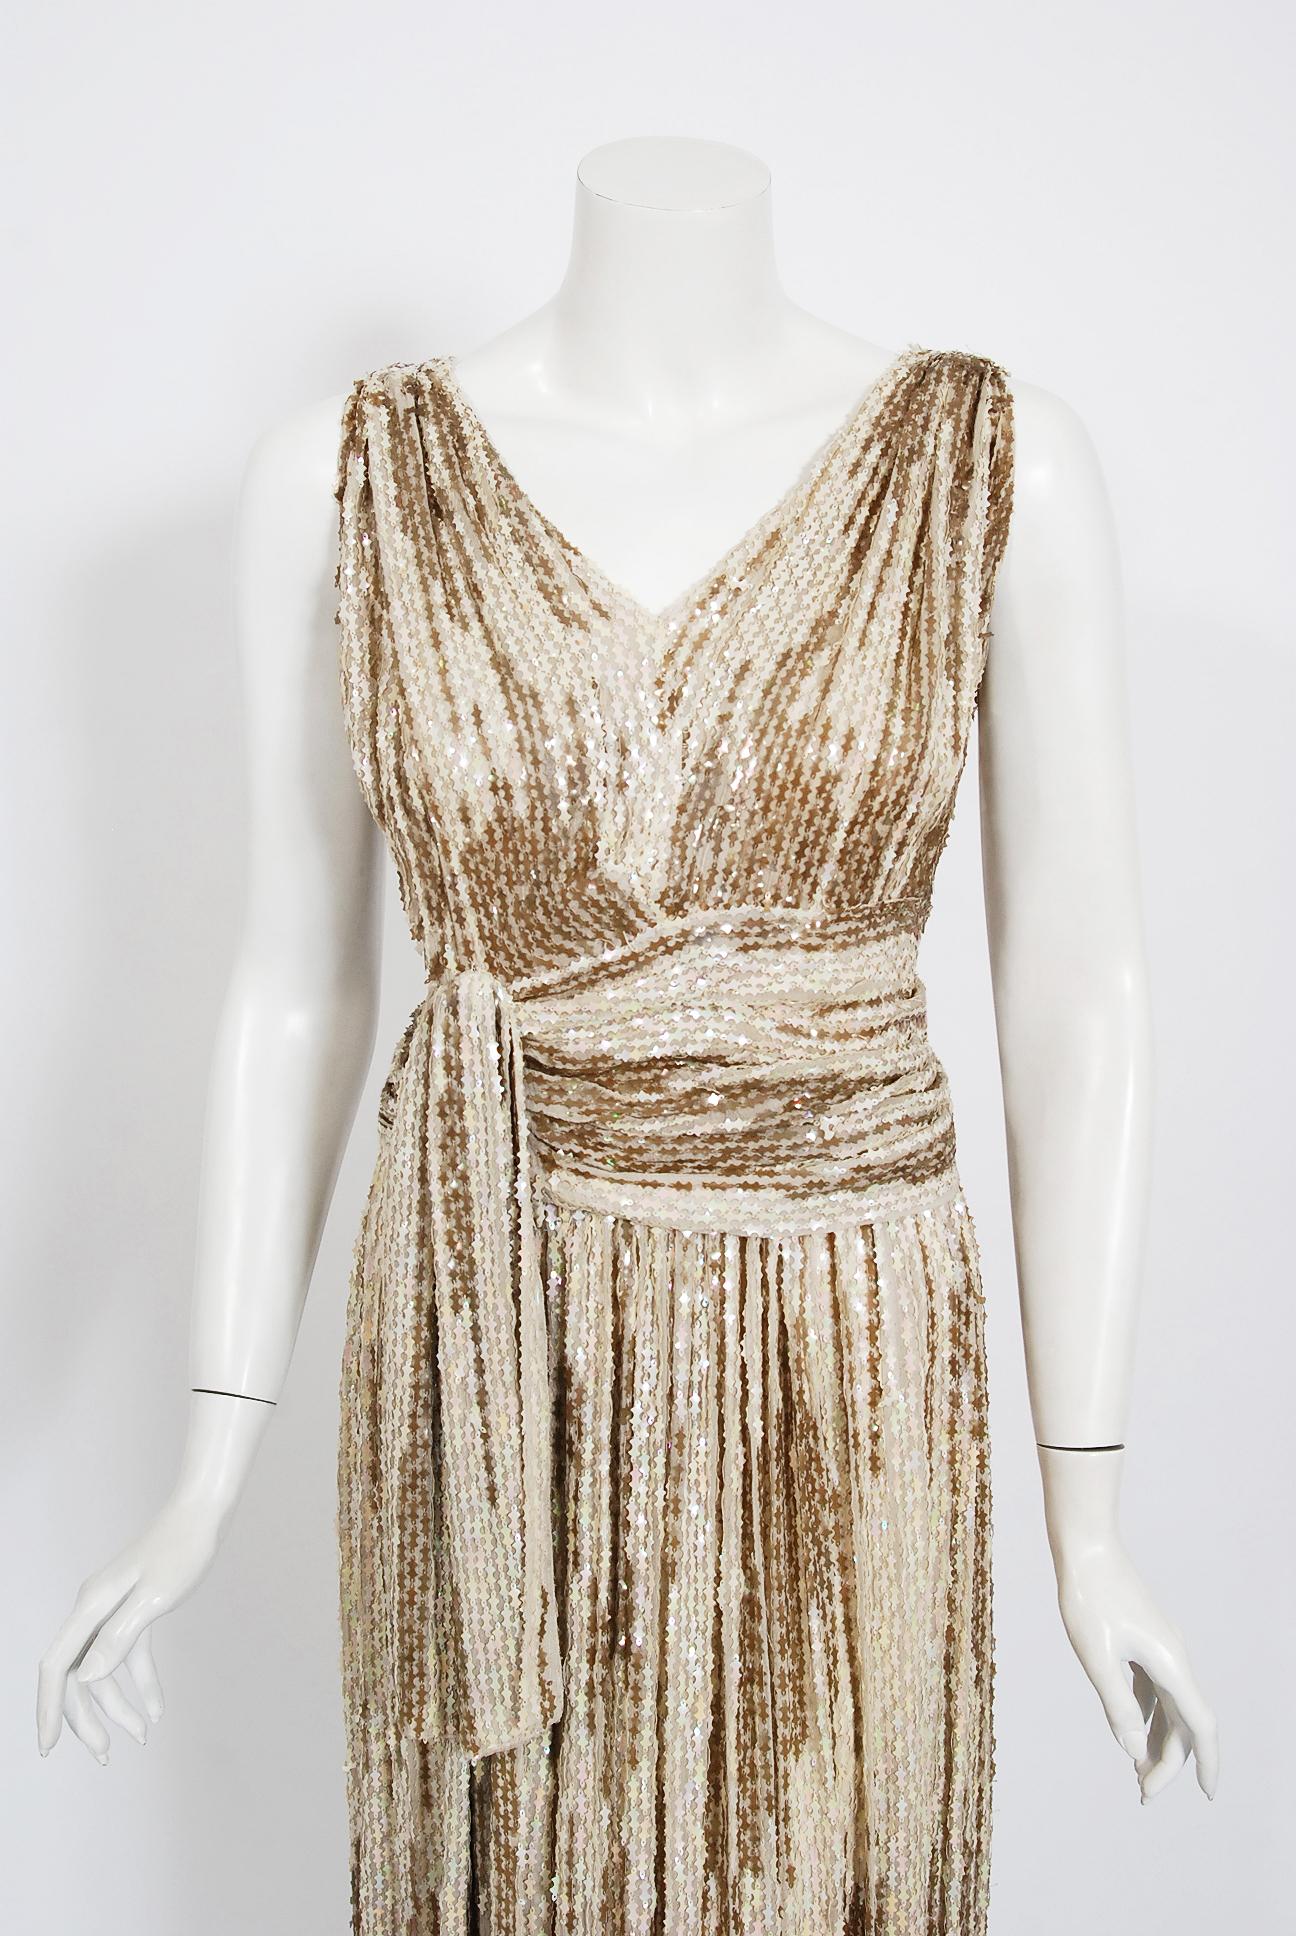 Les robes étincelantes du début des années 1940 sont des favoris éternels et ce modèle de couture française est à couper le souffle. La structure simple et fluide du vêtement est si moderne ; les fines paillettes fantaisie sont un trésor d'art à